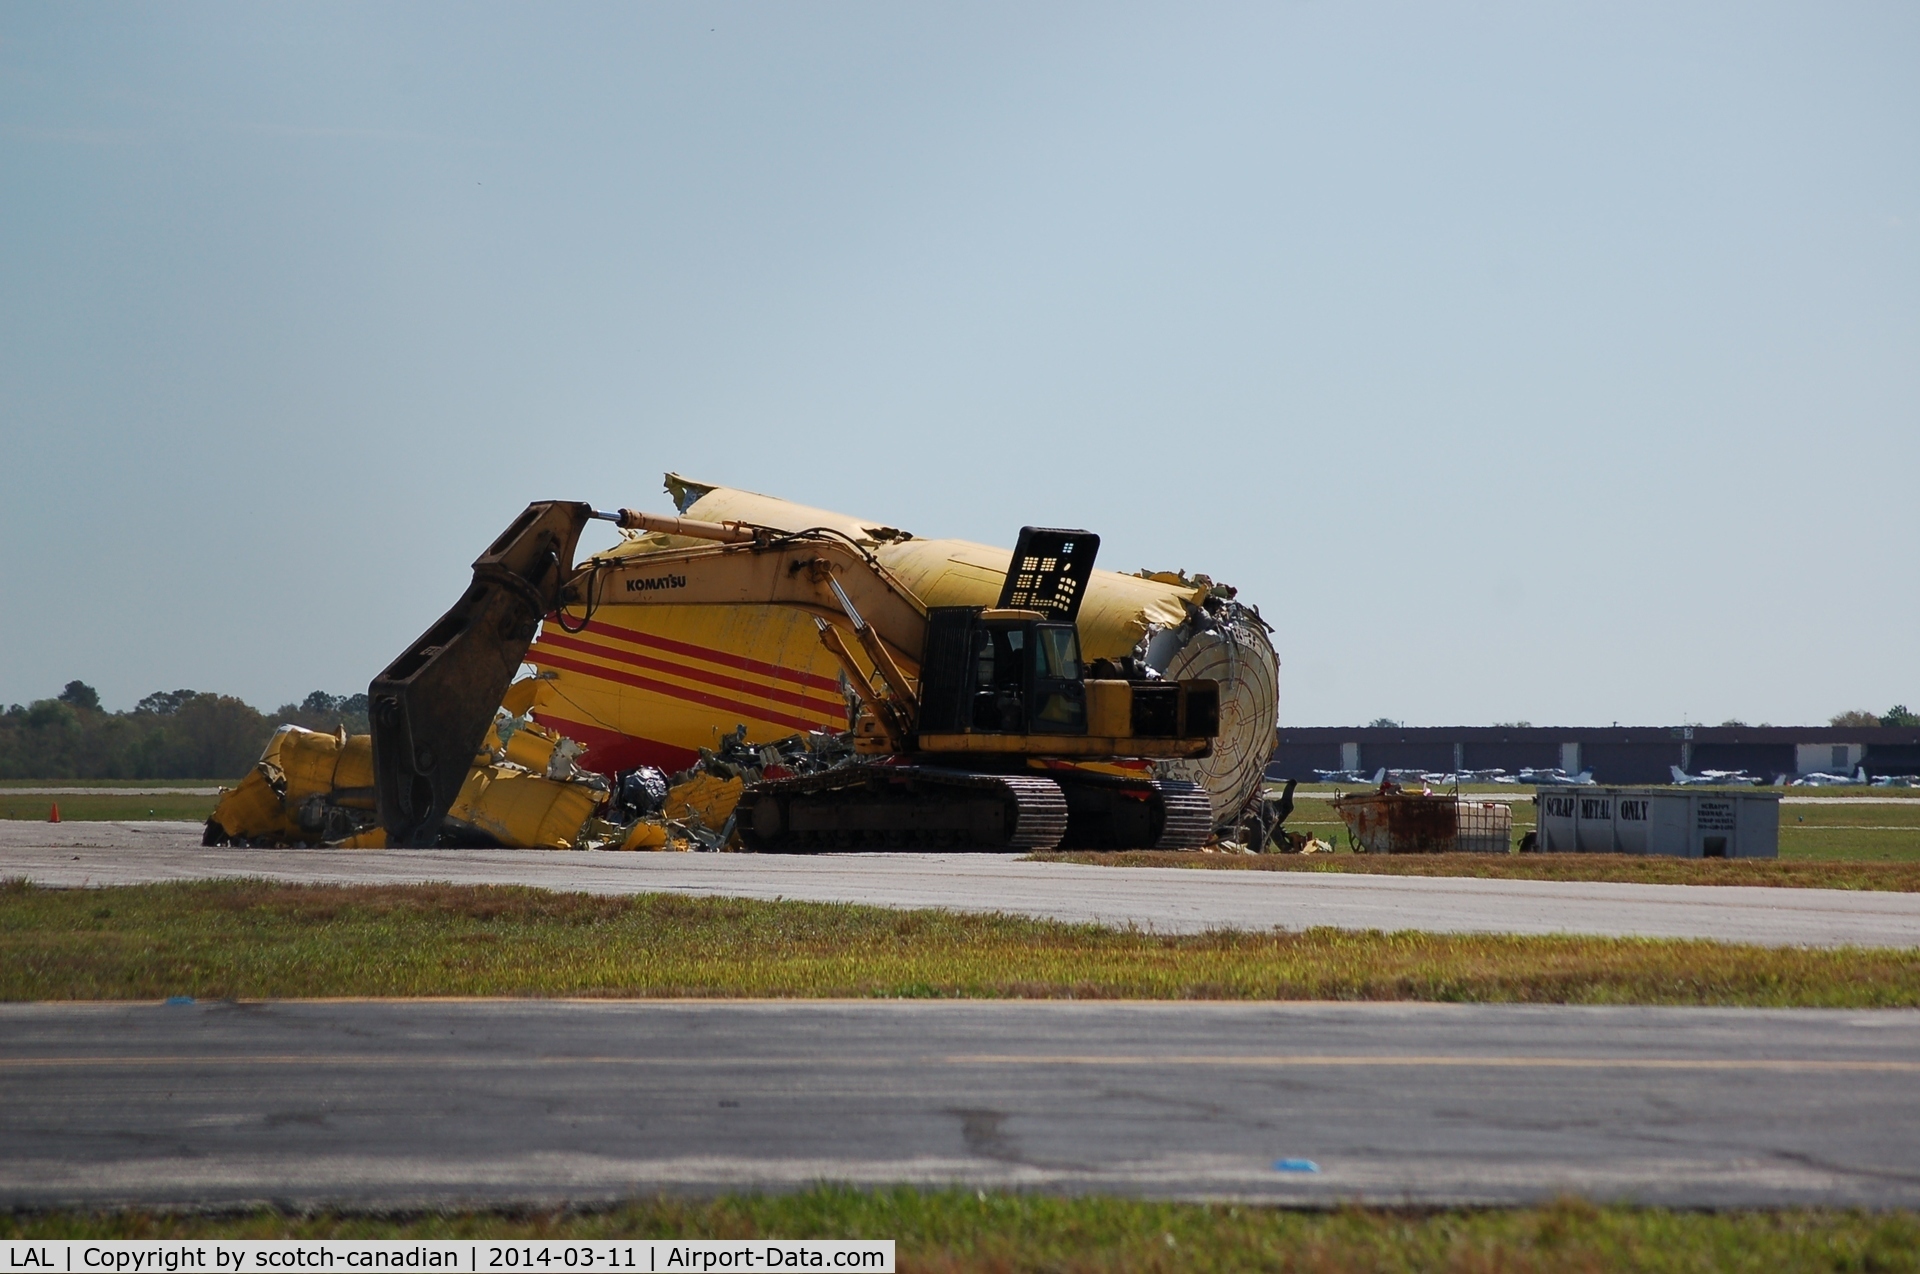 Lakeland Linder Regional Airport (LAL) - Former DHL Cargo Jet gets scraped at Lakeland Linder Regional Airport, Lakeland, FL 